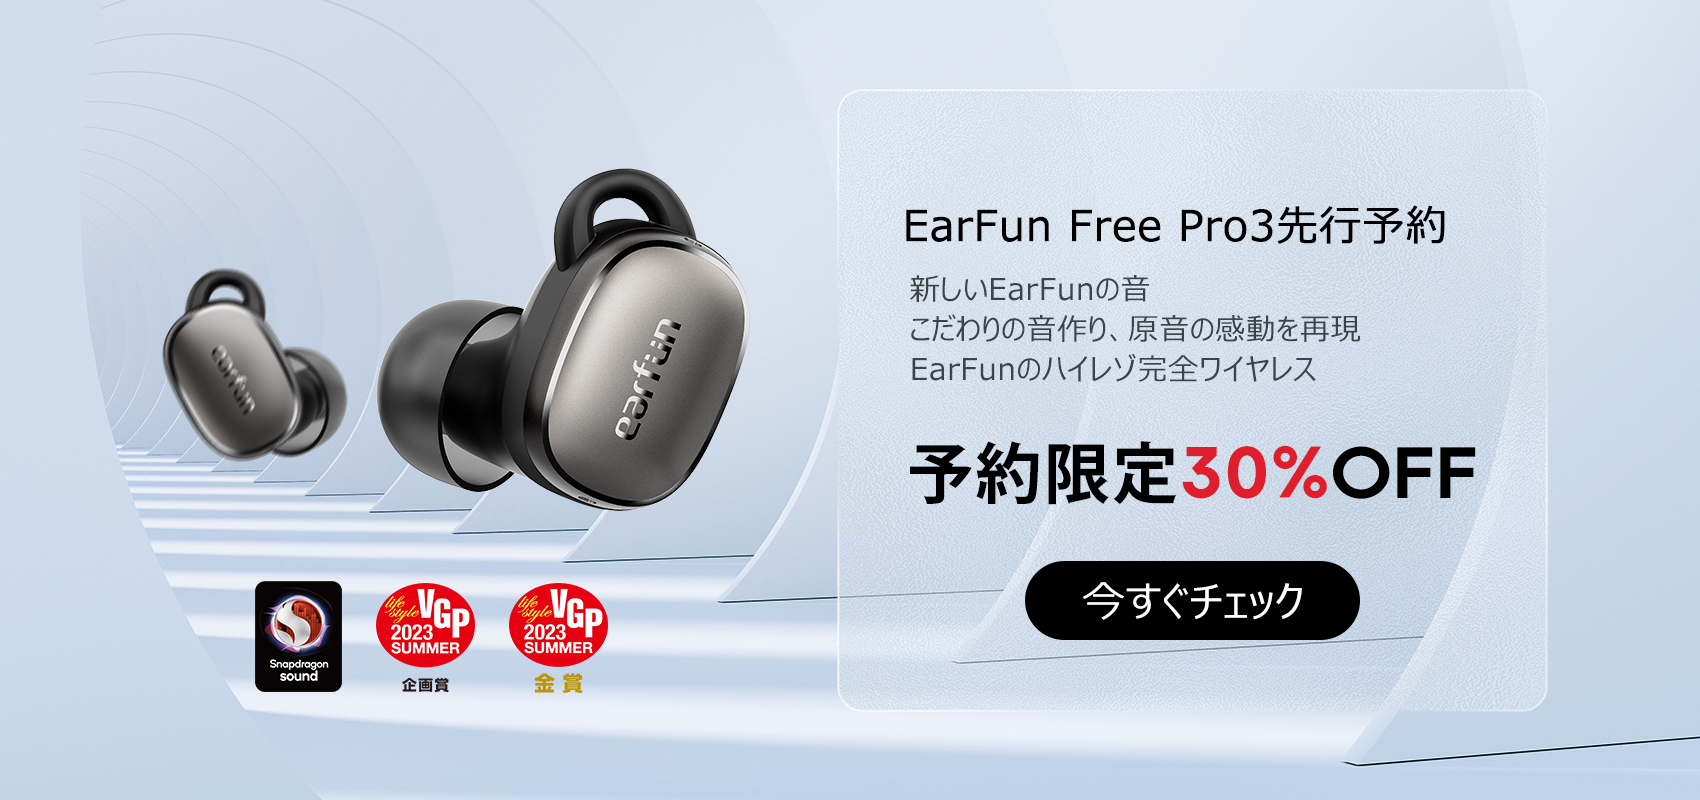 earfun free pro3 ブラウン ブラック